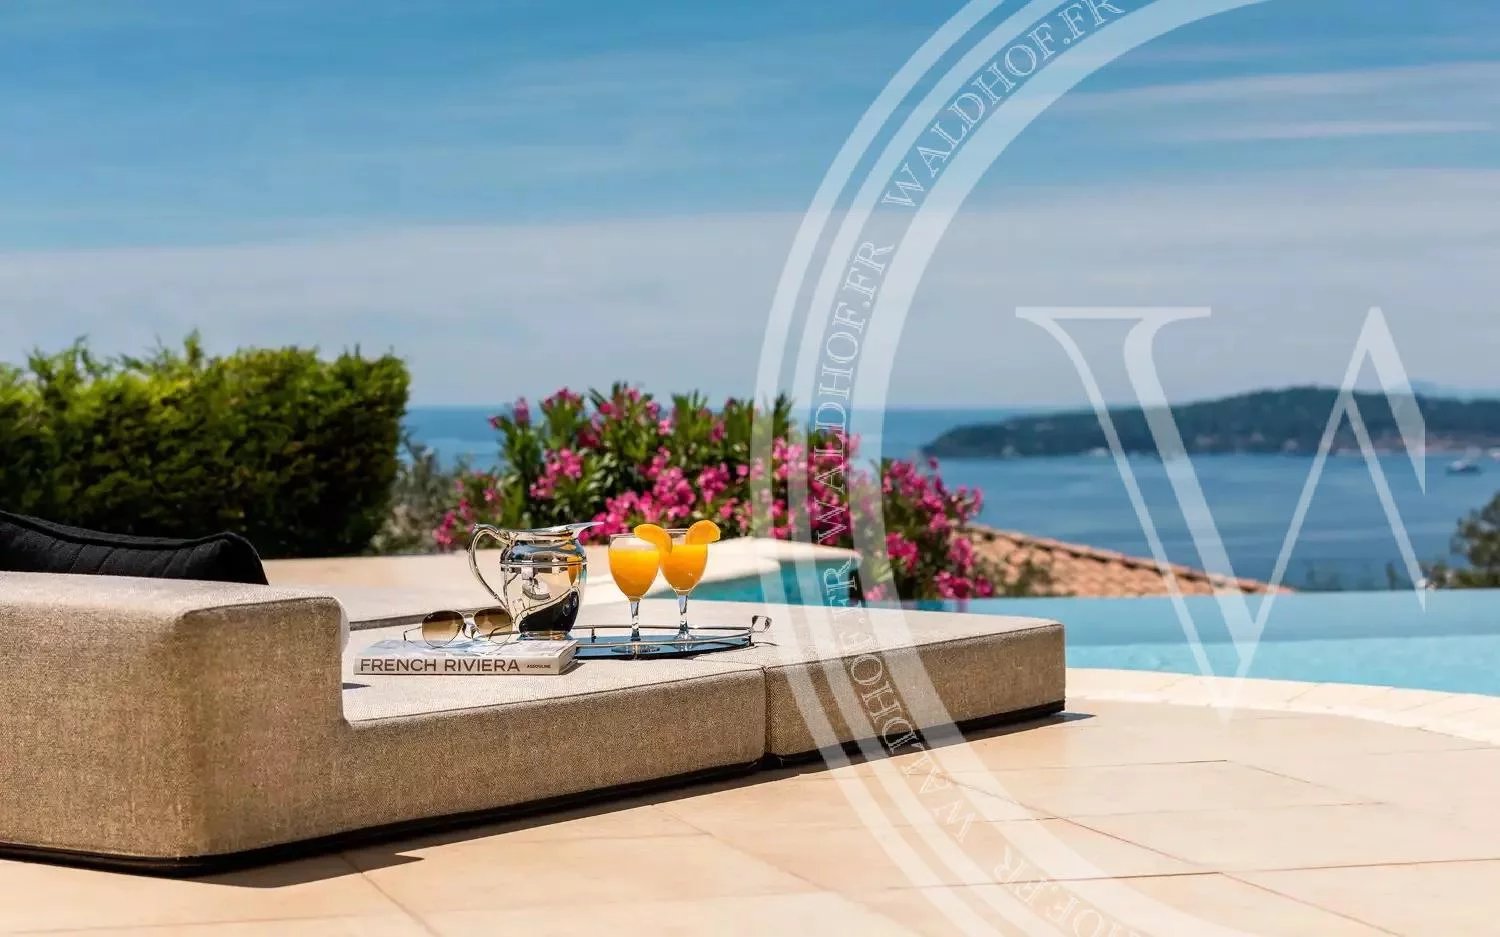 Villa Monte Carlo - Absoluter Luxus an der Grenze zu Monaco